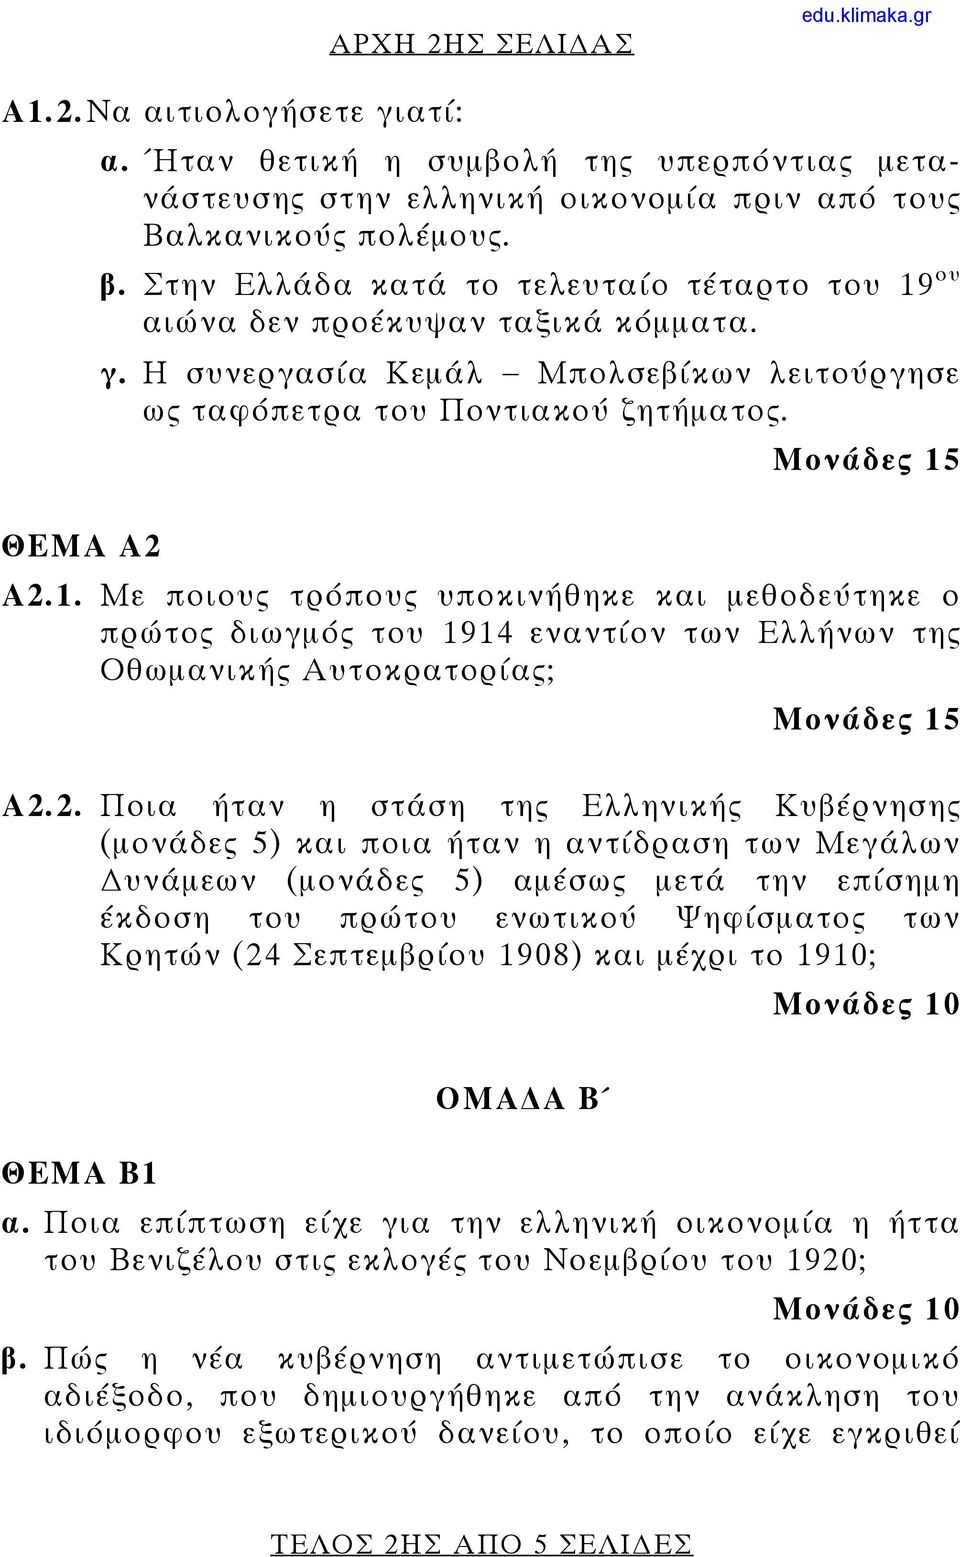 2. Ποια ήταν η στάση της Ελληνικής Κυβέρνησης (μονάδες 5) και ποια ήταν η αντίδραση των Μεγάλων υνάμεων (μονάδες 5) αμέσως μετά την επίσημη έκδοση του πρώτου ενωτικού Ψηφίσματος των Κρητών (24